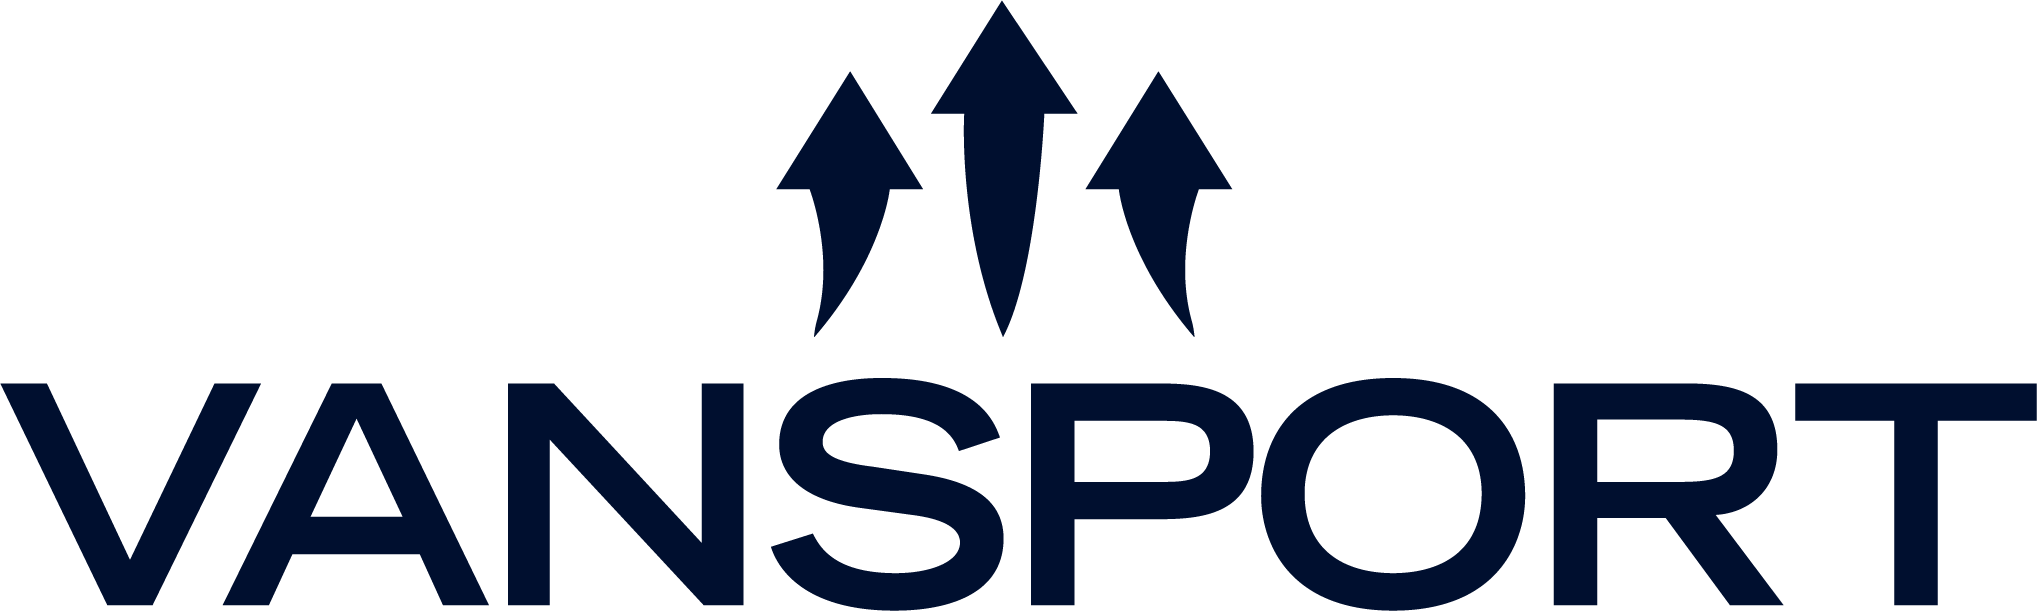 Vansport logo.